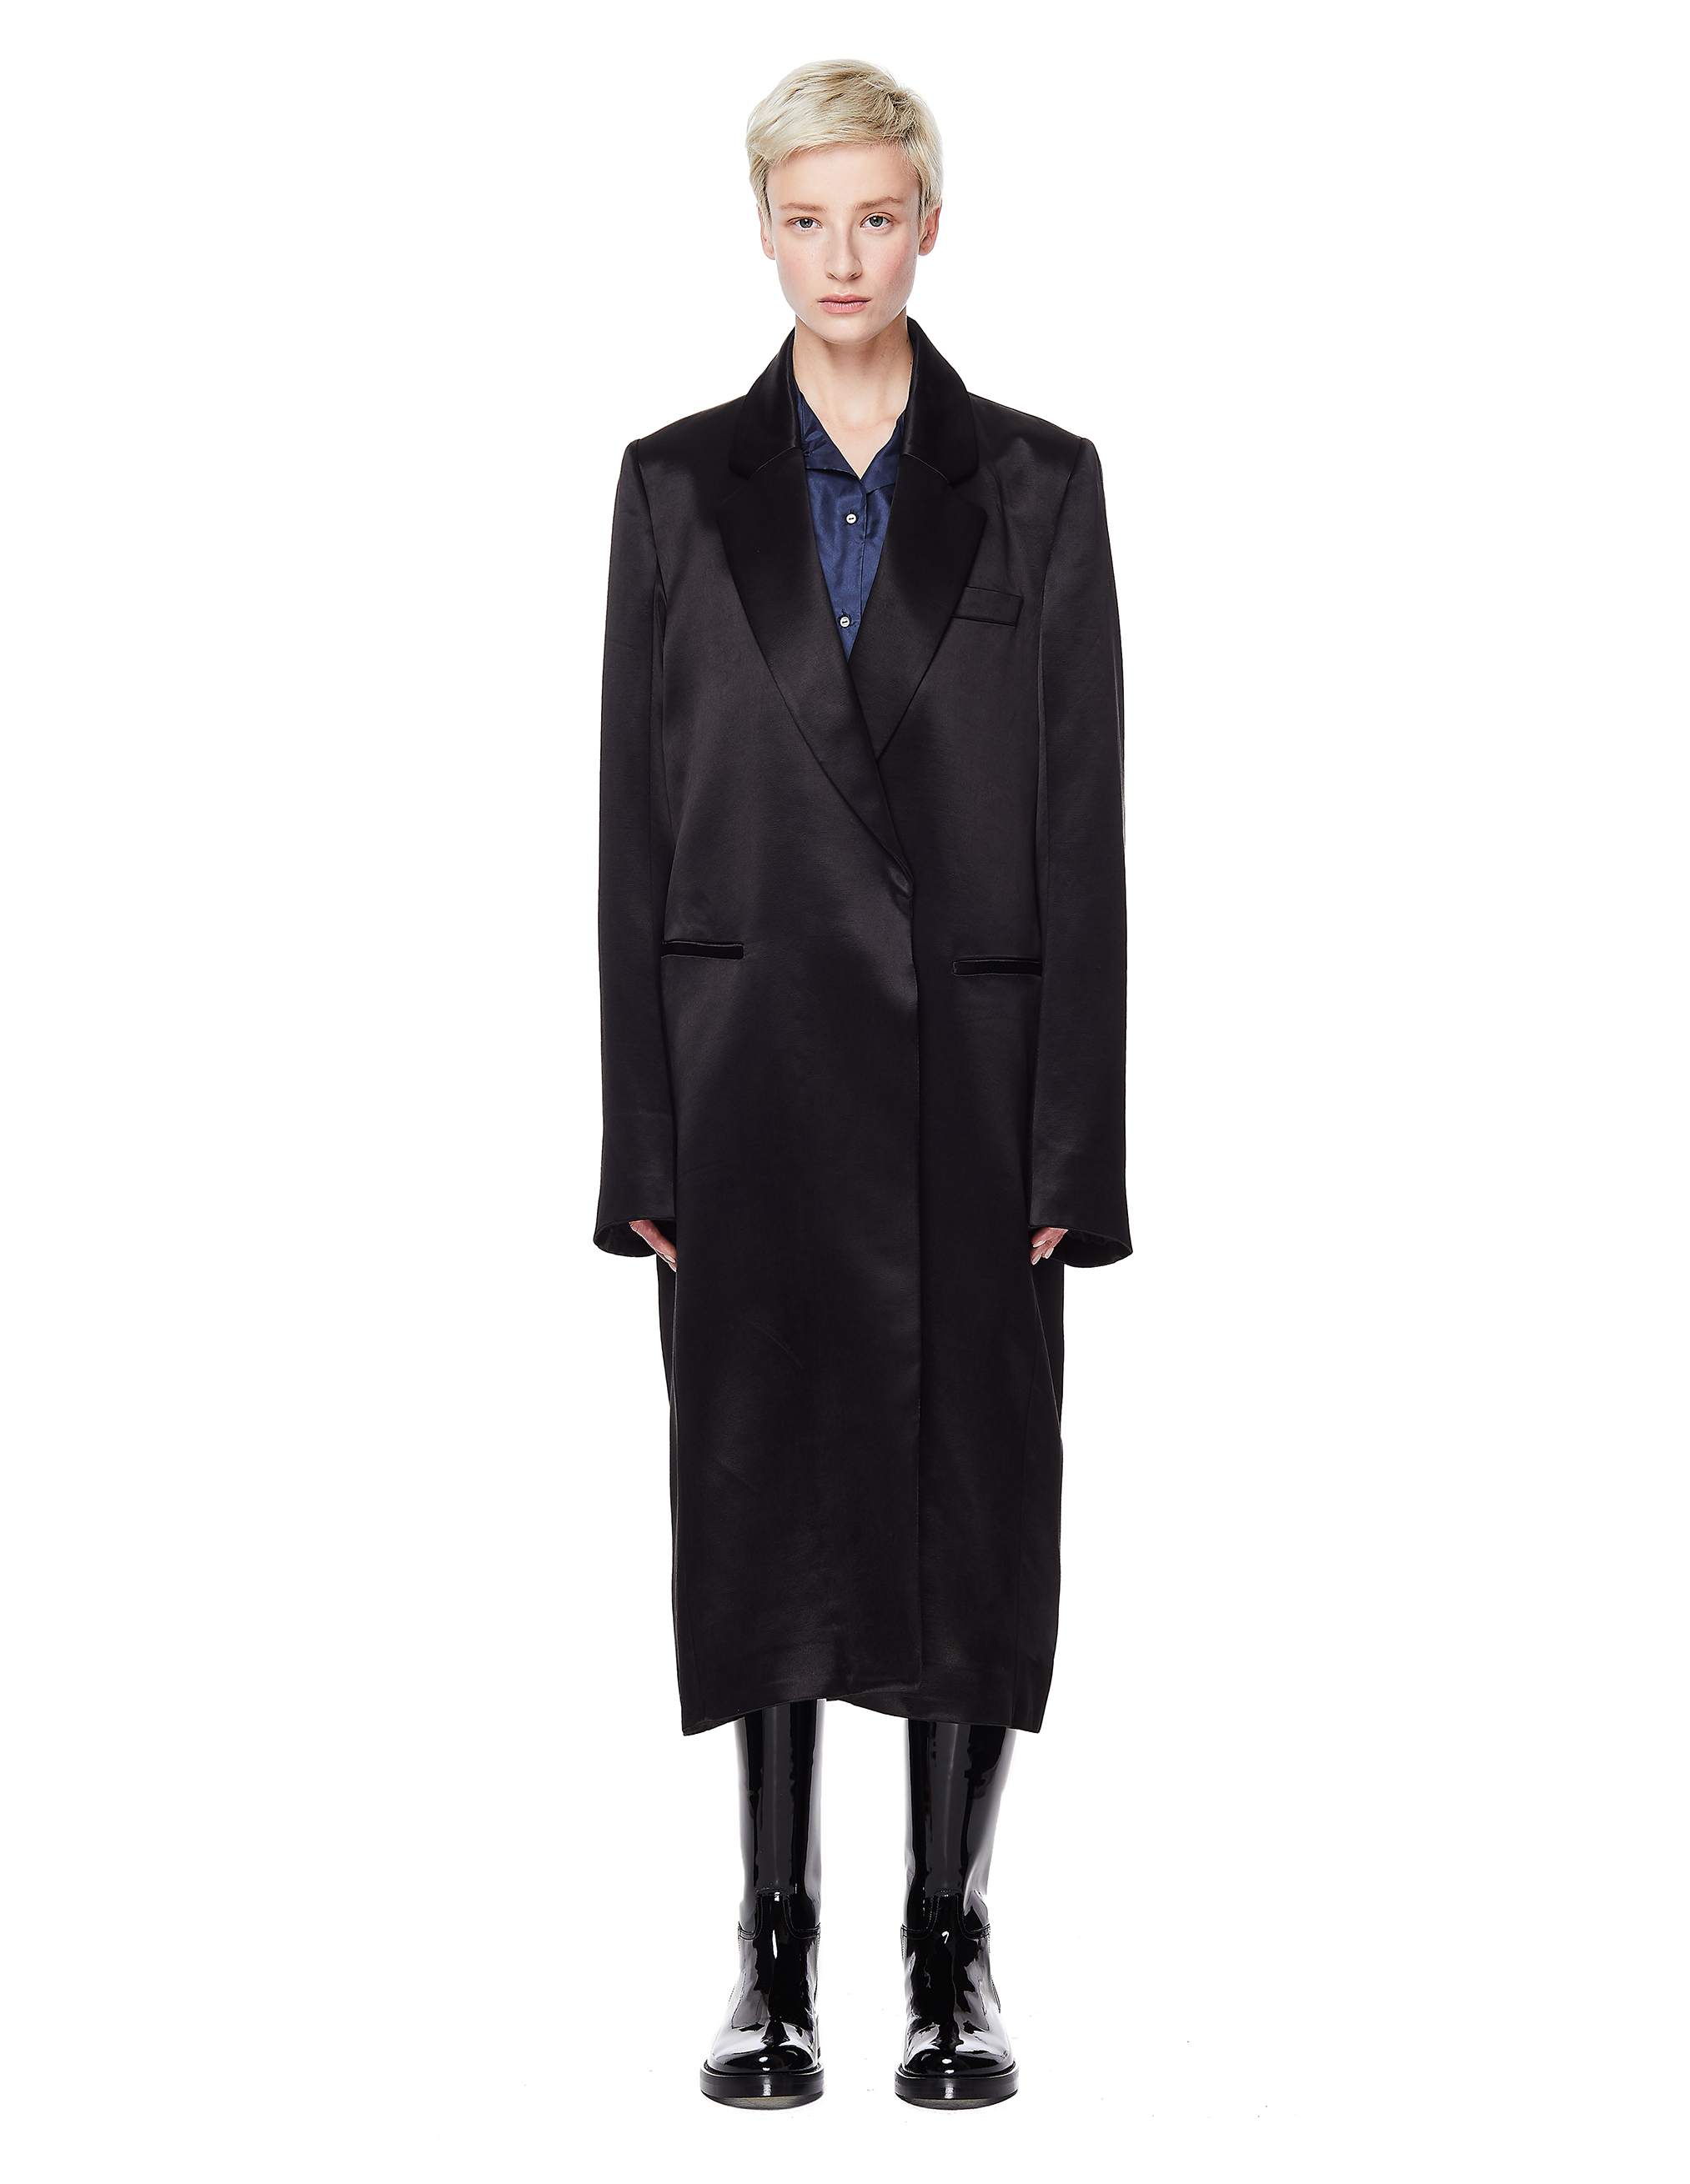 Черное сатиновое пальто Ann Demeulemeester 1901-1136-201-099, размер 38;40